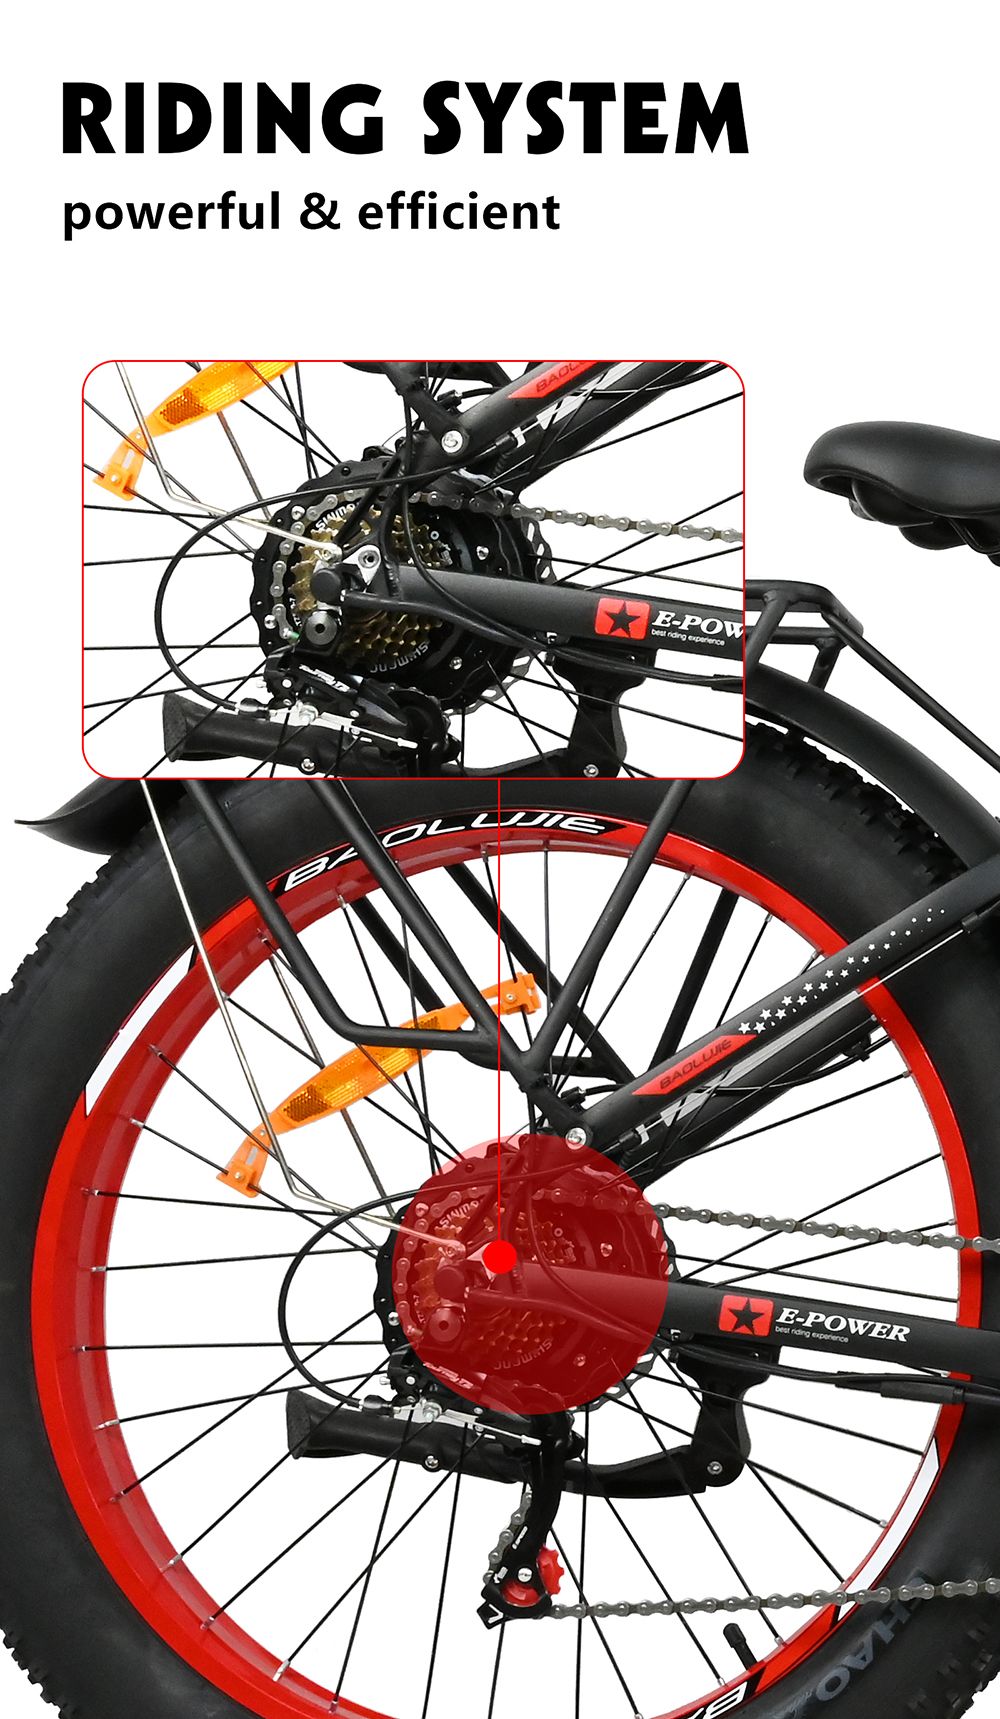 Vélo électrique BAOLUJIE DP2619, gros pneu 26 * 4.0 pouces, moteur 750 W, batterie 48 V 13 Ah, vitesse maximale 45 km/h, portée maximale 45 km, écran LCD SHIMANO à 7 vitesses - Gris